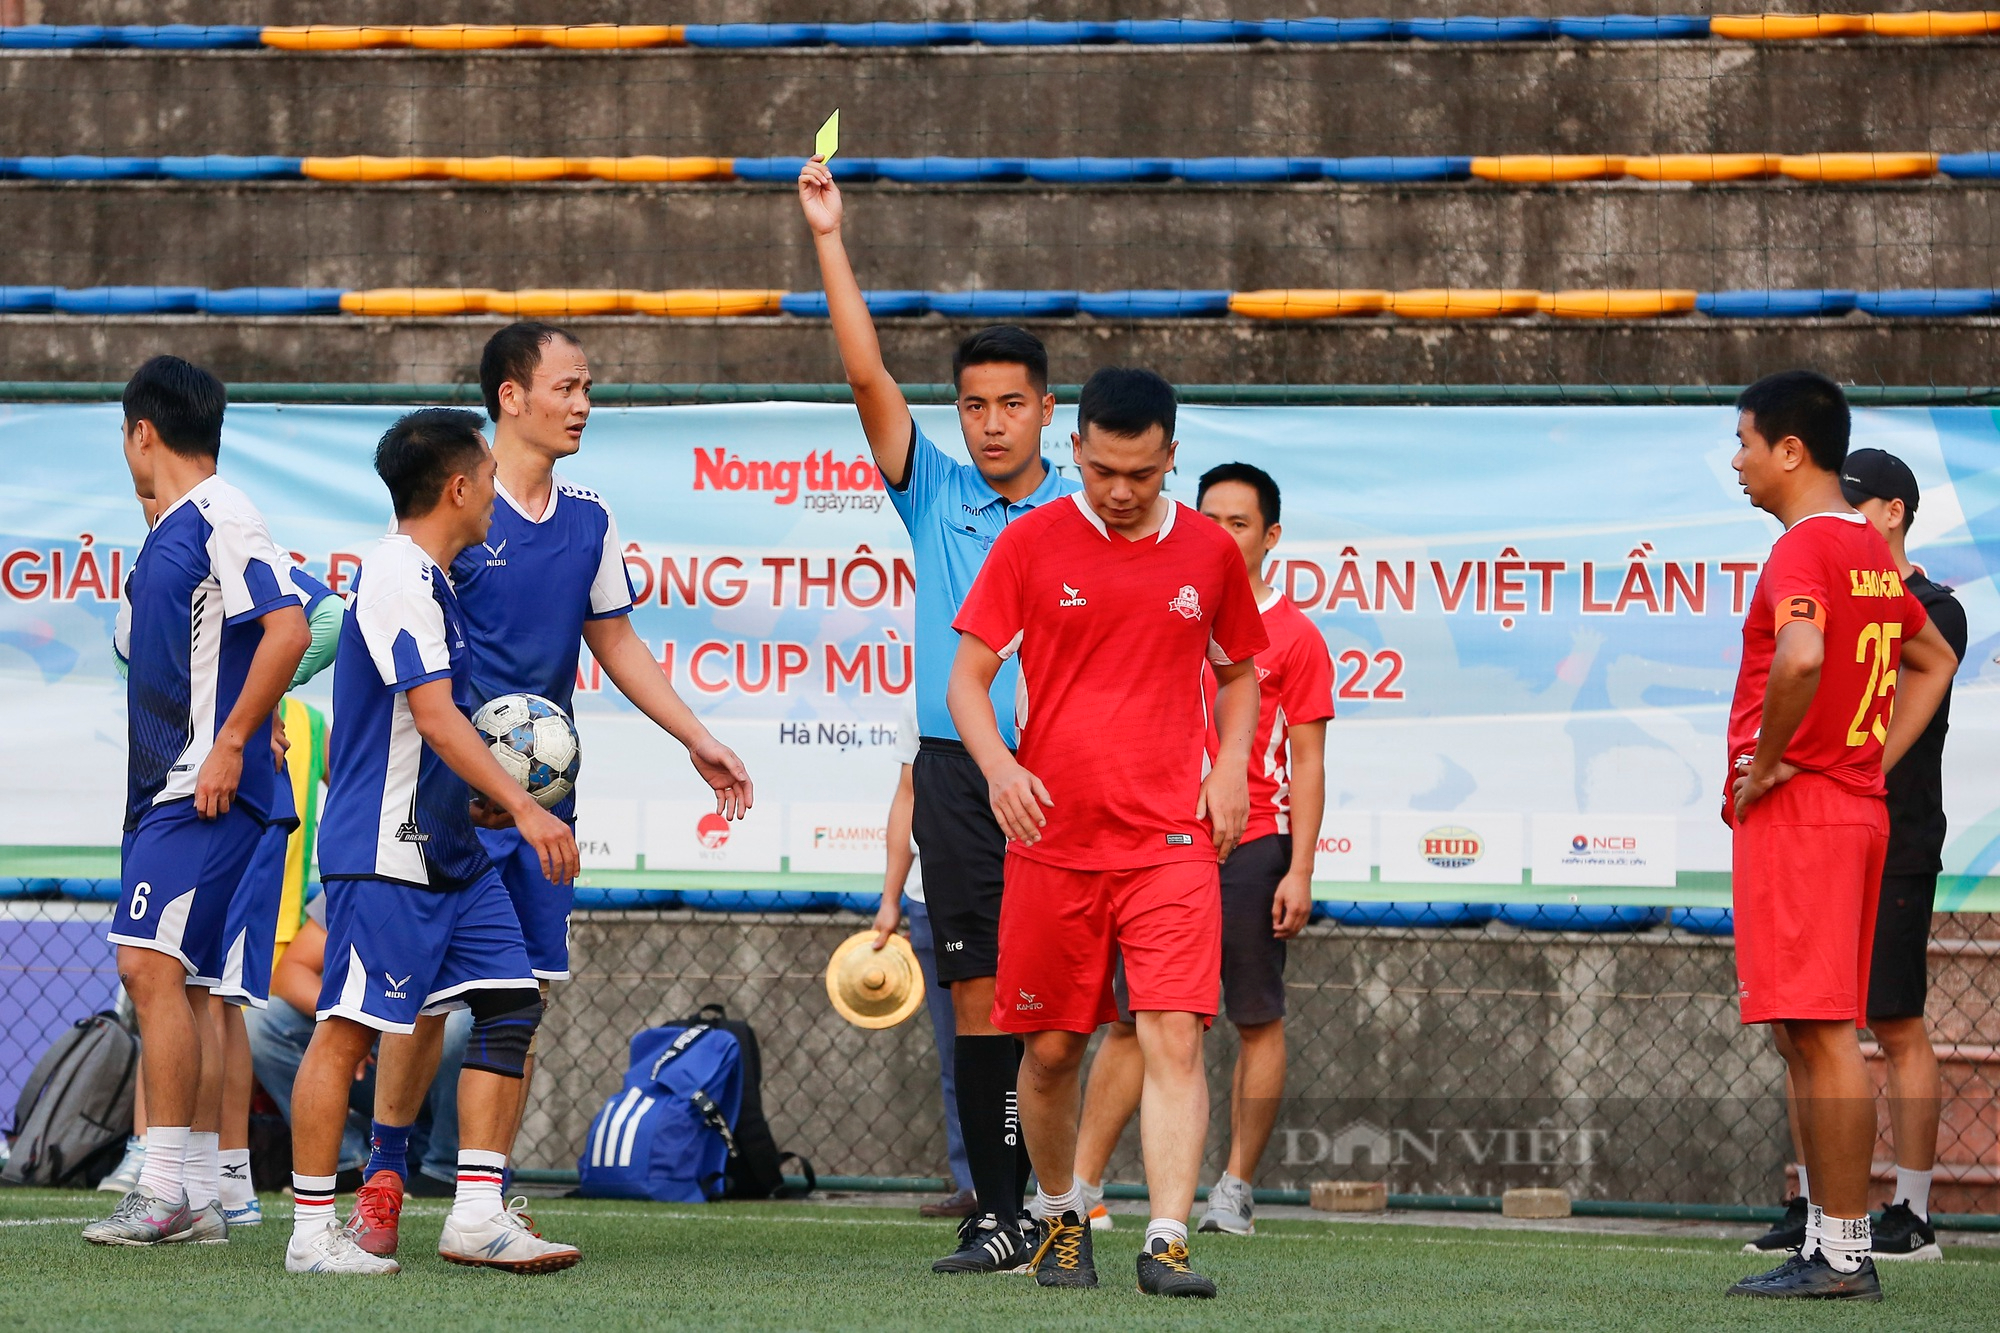 Đội bóng VOV chính thức lên ngôi vô địch sau chiến thắng nghẹt thở trước báo Lao Động - Ảnh 11.